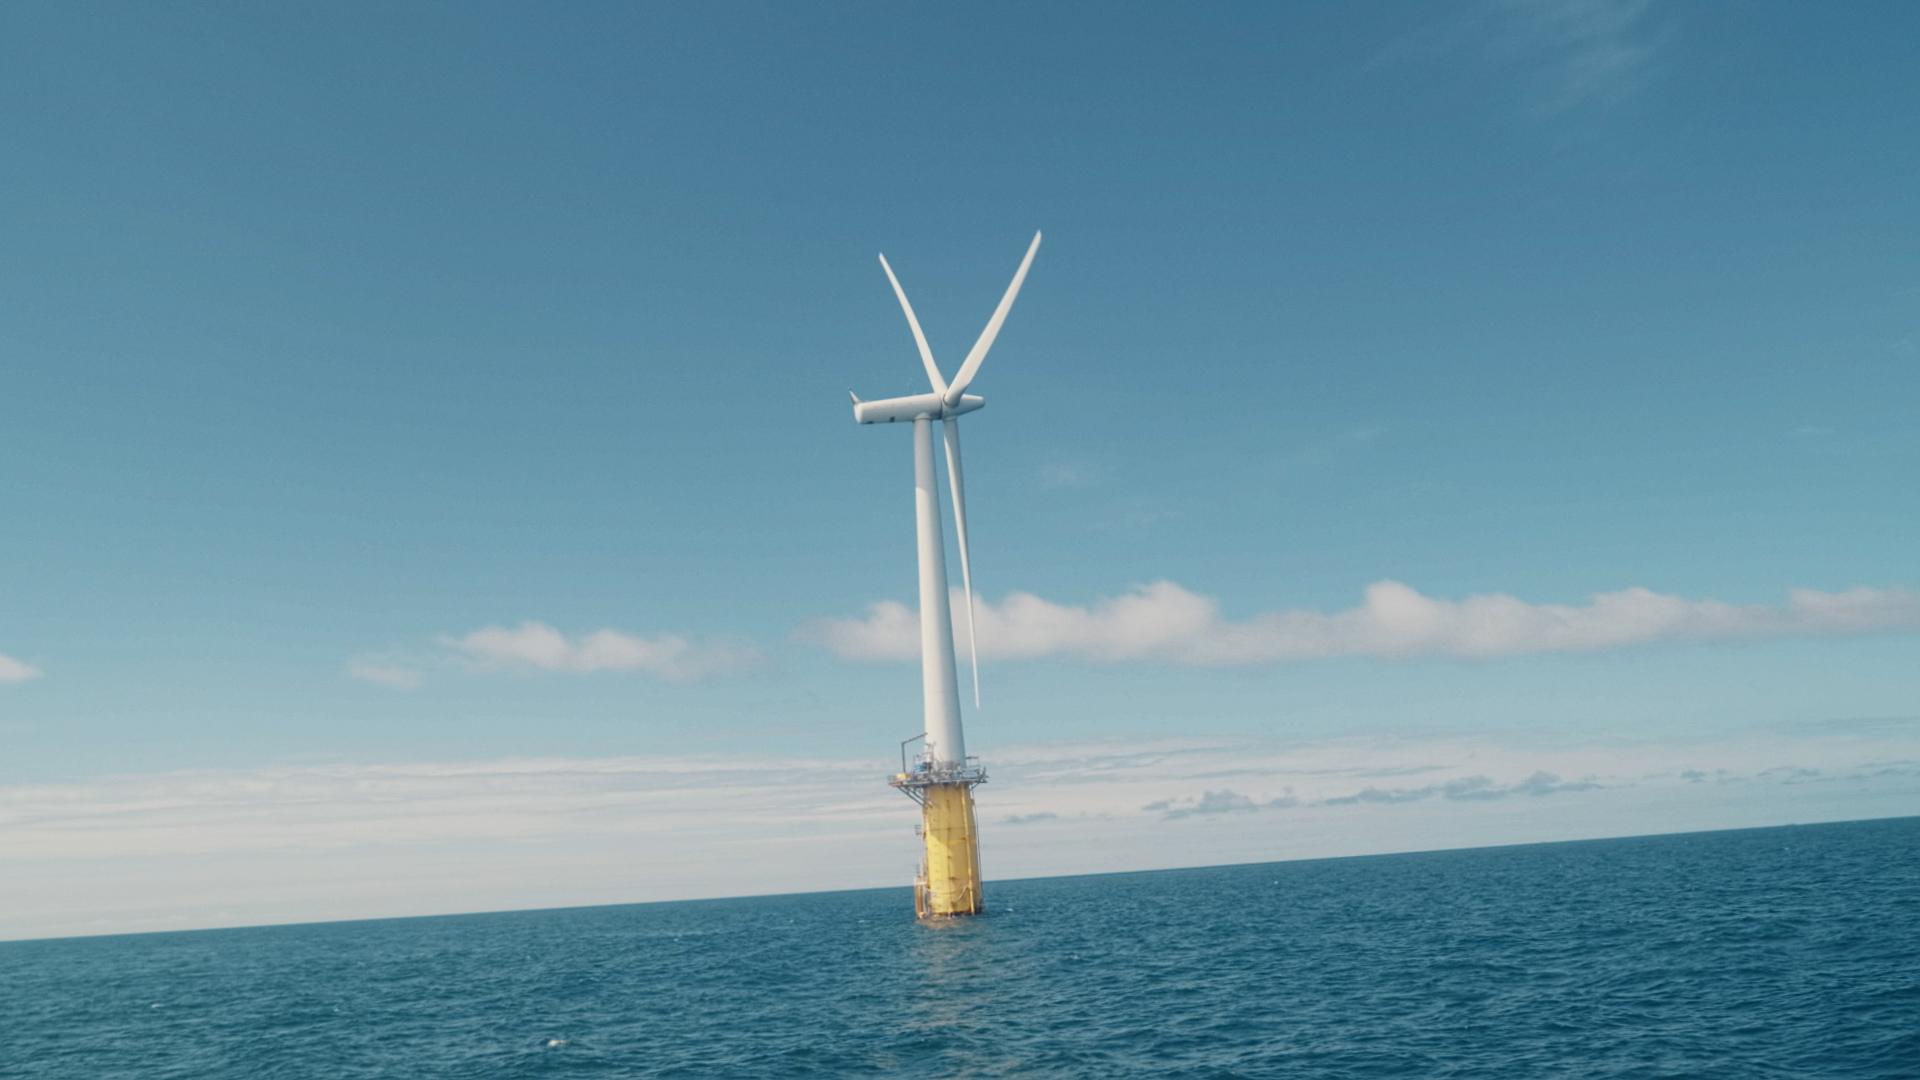 Offshore wind turbine in the North Sea